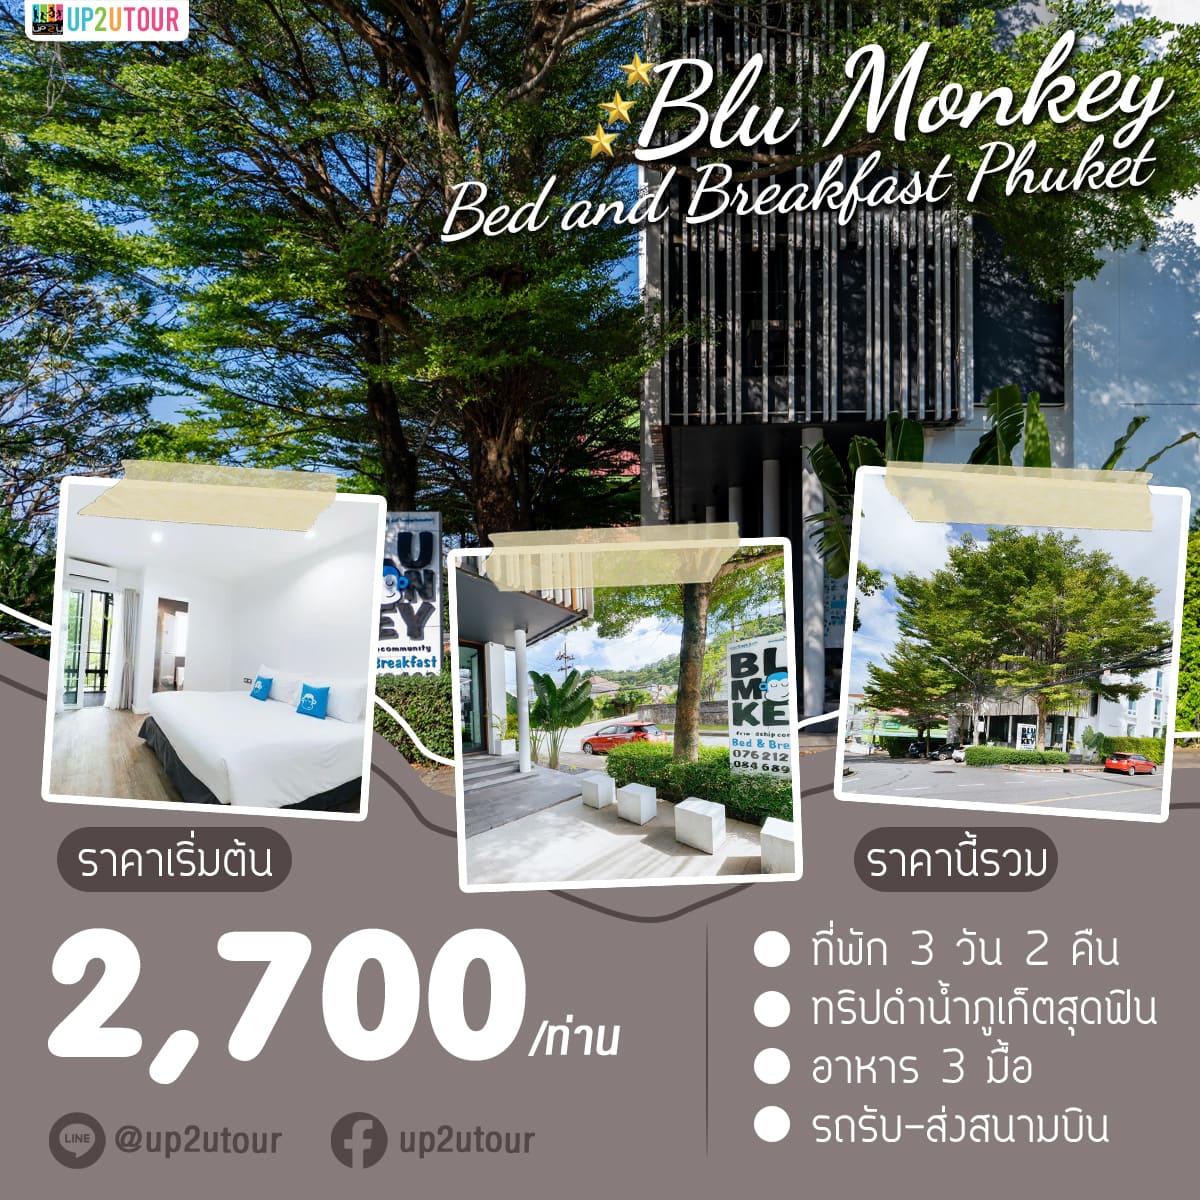 Blu Monkey Bed & Breakfast ราคาเริ่มต้นที่ 2,700 บาท/ท่าน